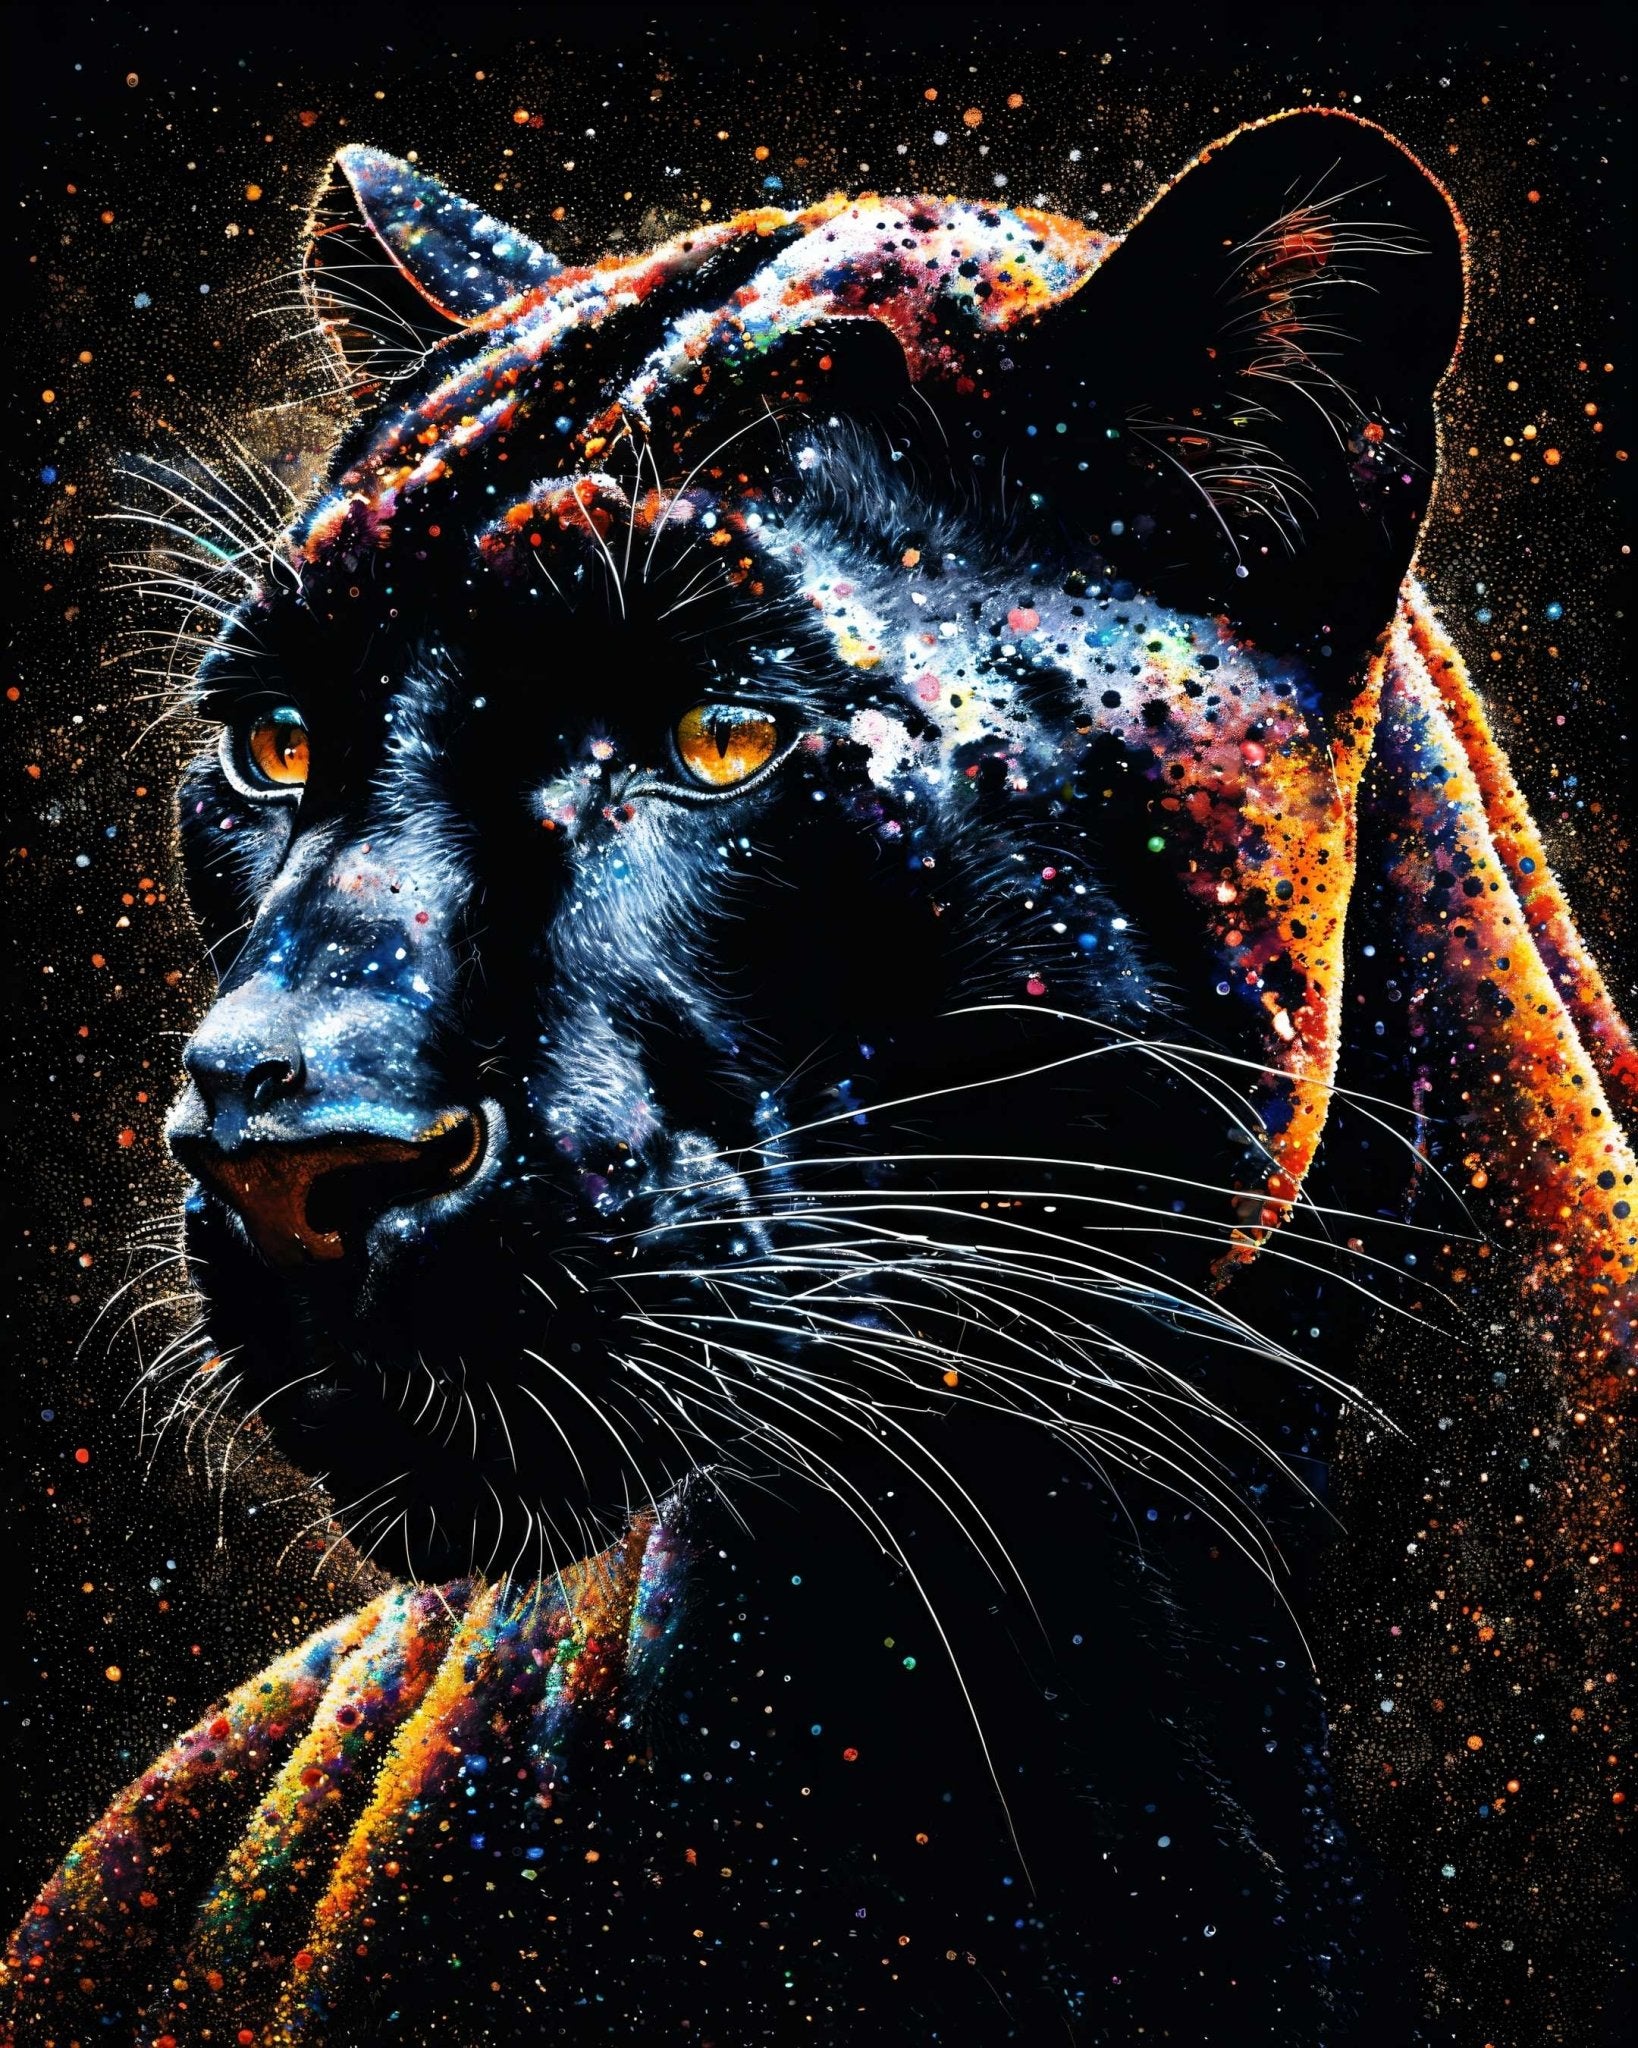 Spiritual animal - Poster - Ever colorful